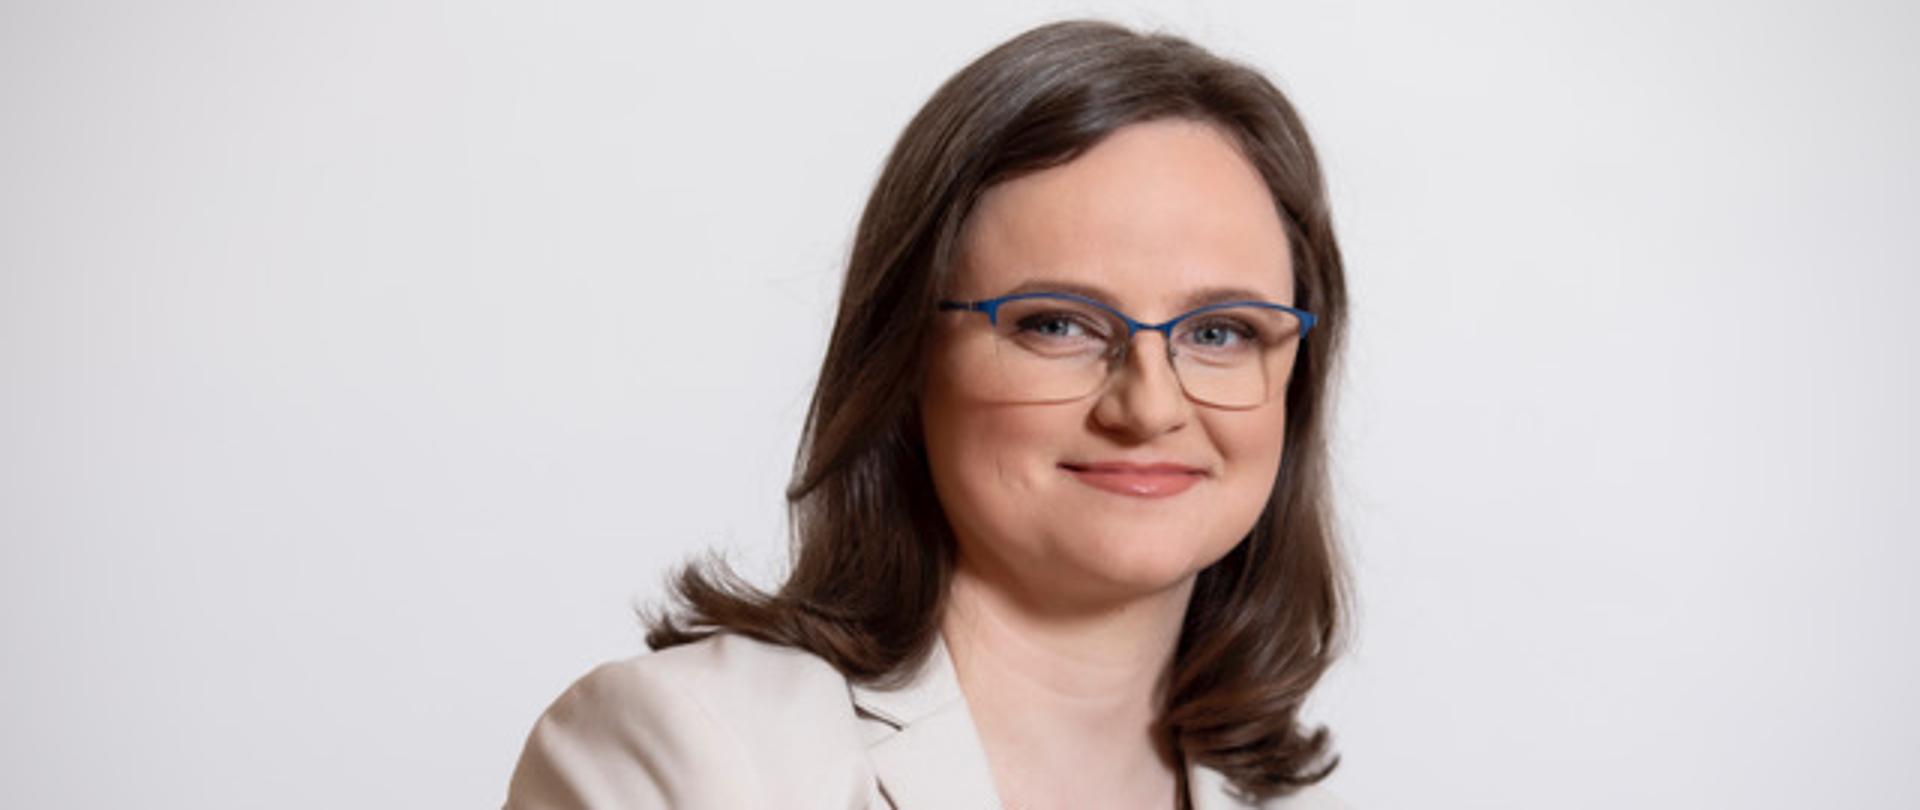 Anna Chałupa - Podsekretarz Stanu, Zastępca Szefa Krajowej Administracji Skarbowej